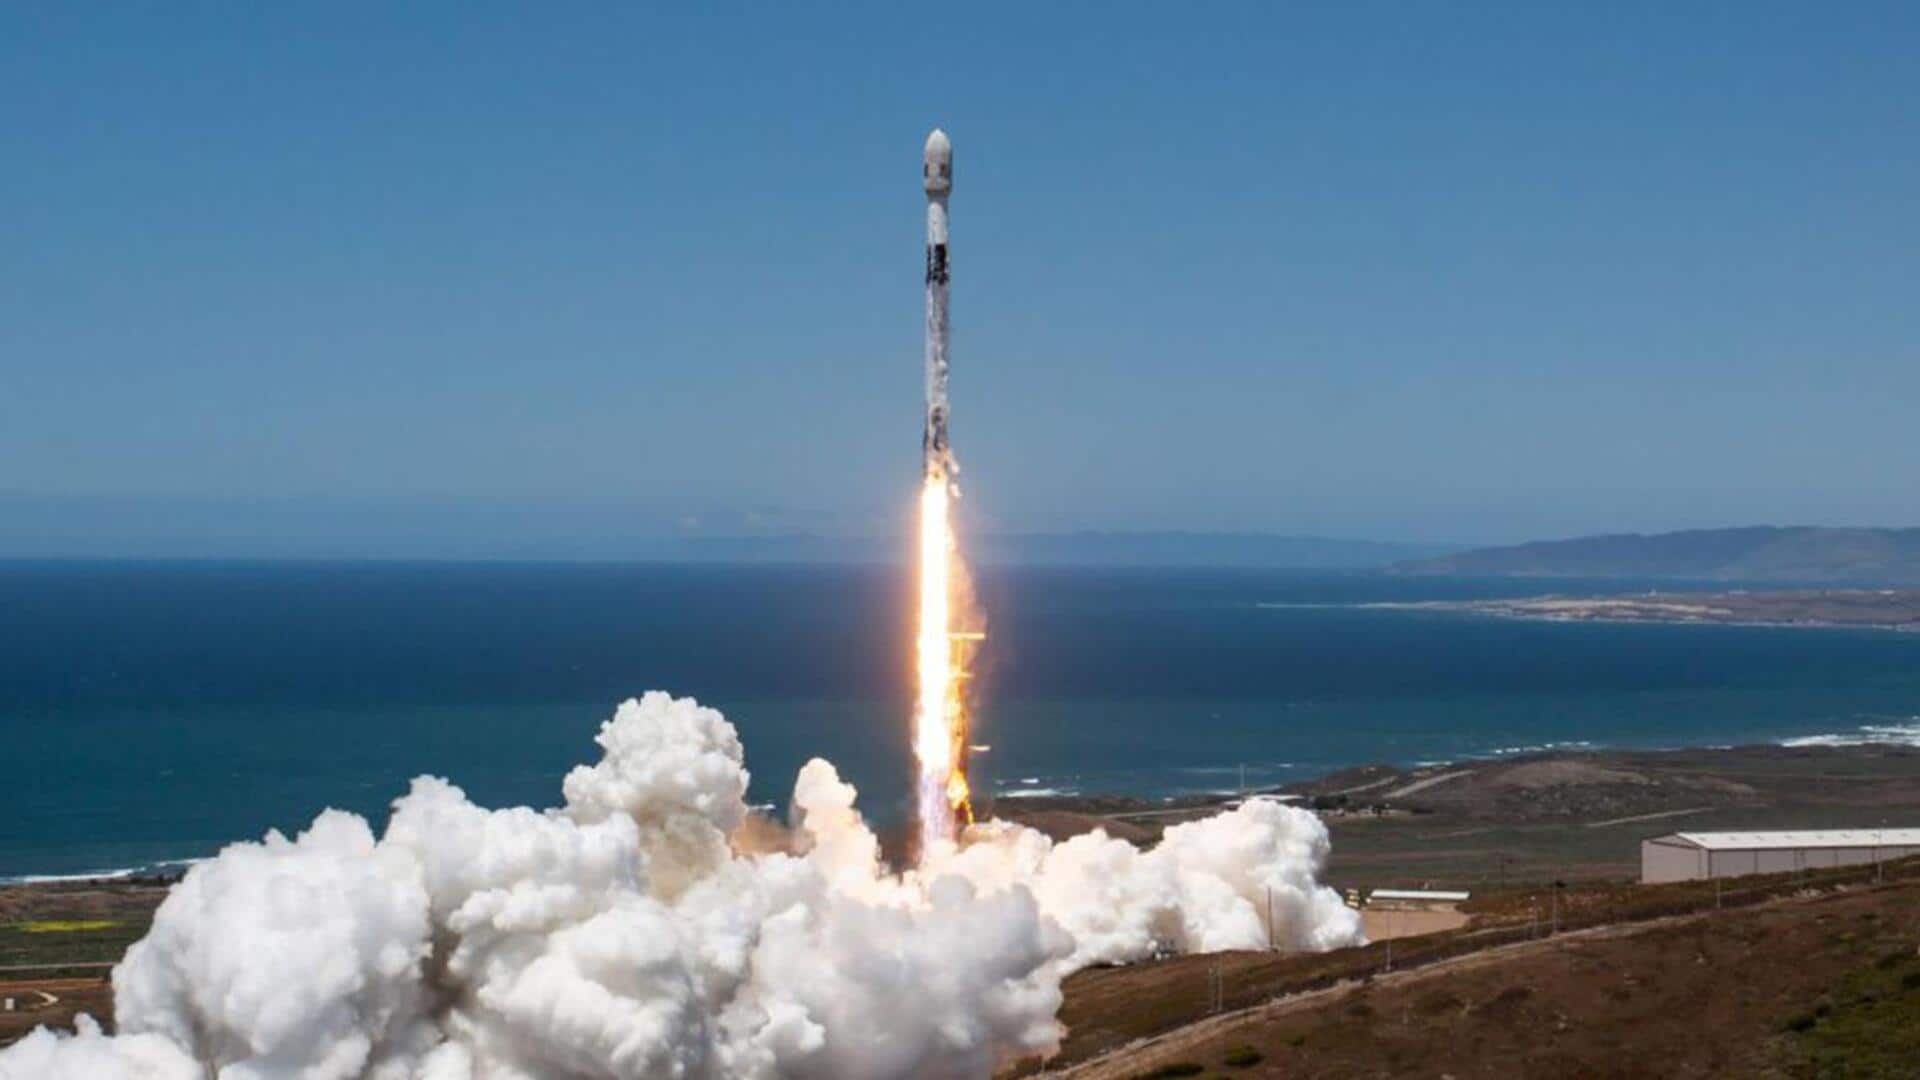 स्पेस-X ने 56 नए स्टारलिंक सैटेलाइट्स किये लॉन्च, उड़ान के बाद समुद्र में लौटा रॉकेट